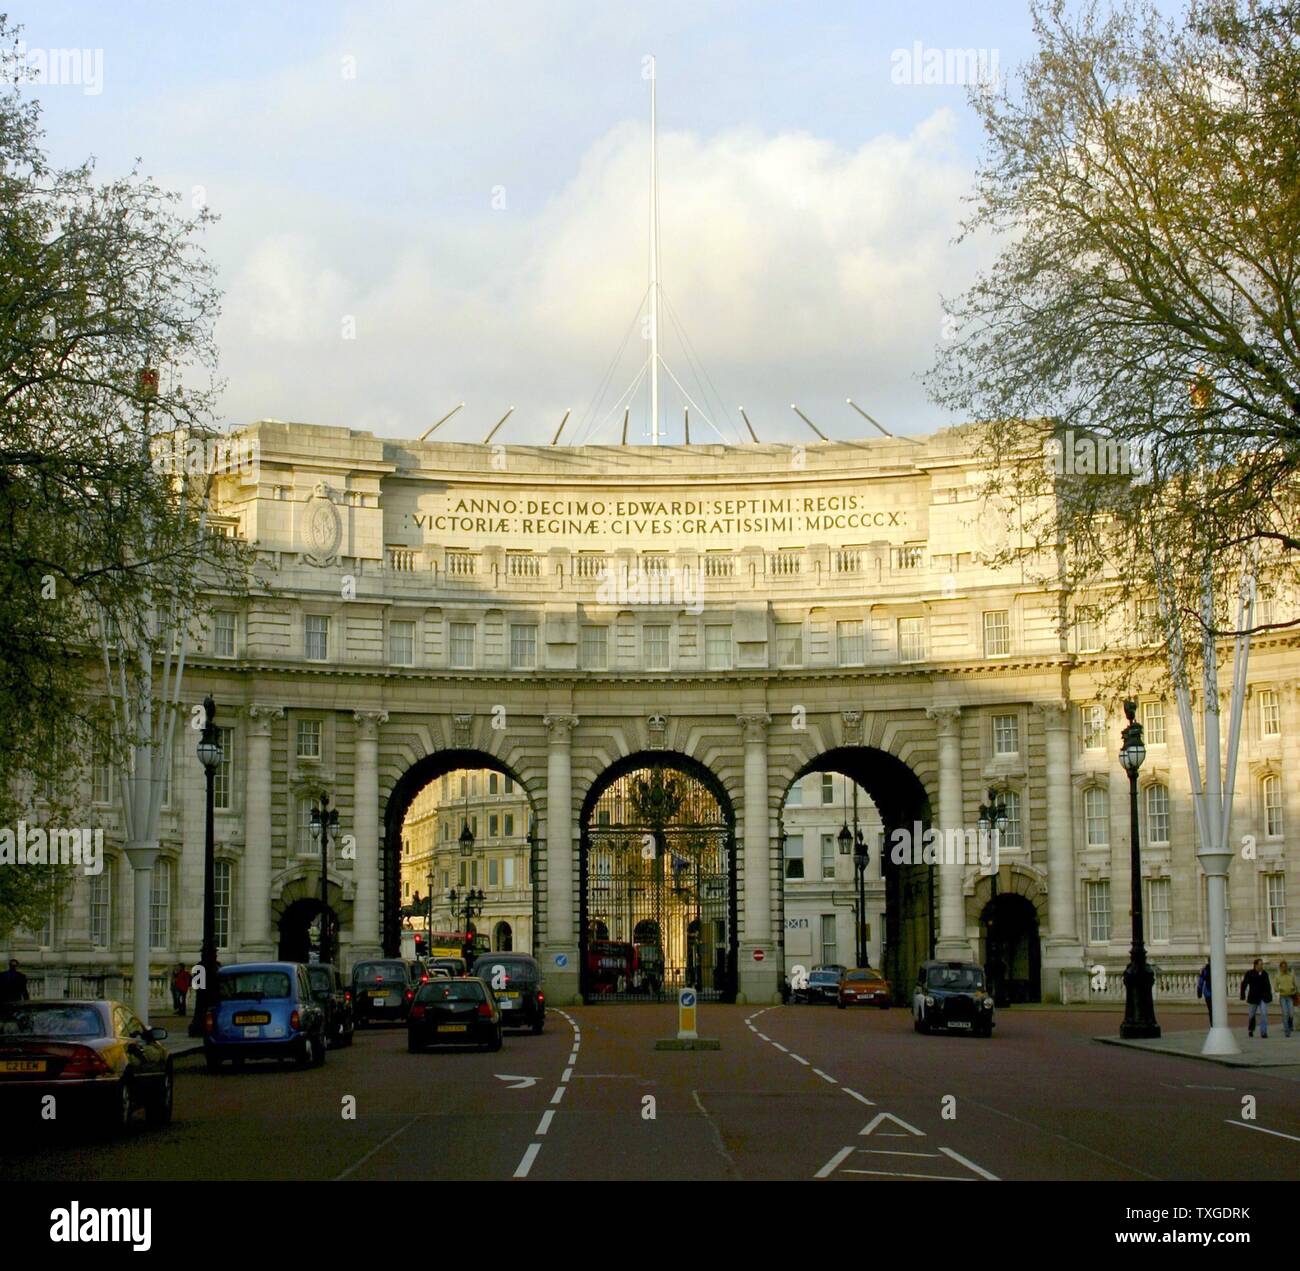 Photographie de l'Admiralty Arch, commandé par le roi Édouard VII en mémoire de sa mère la reine Victoria. Le Mall, Londres. Datée 2015 Banque D'Images